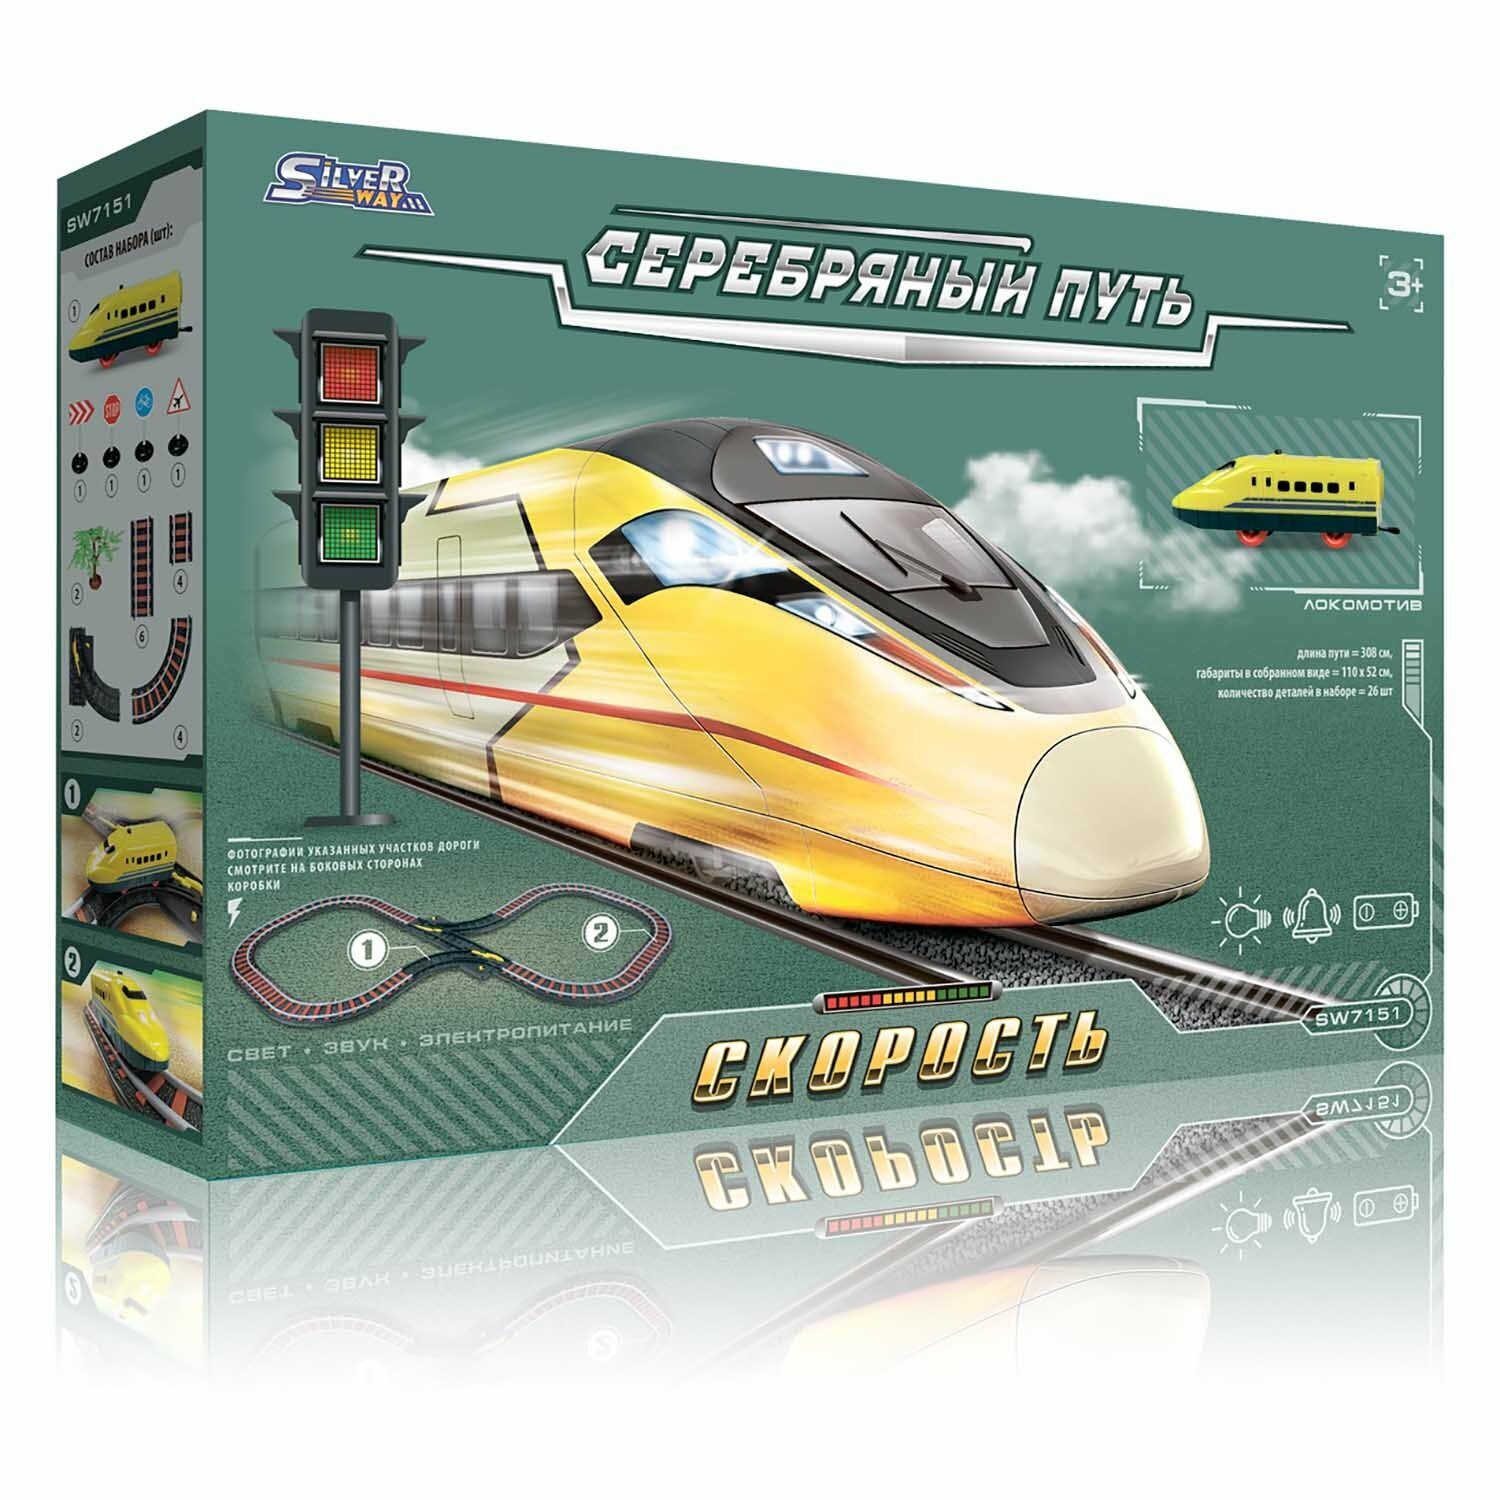 Игровой набор Серебряный путь "Поезд: Скорость" (ж/д 308 см, 1 вагон, свет, звук, аксес.)